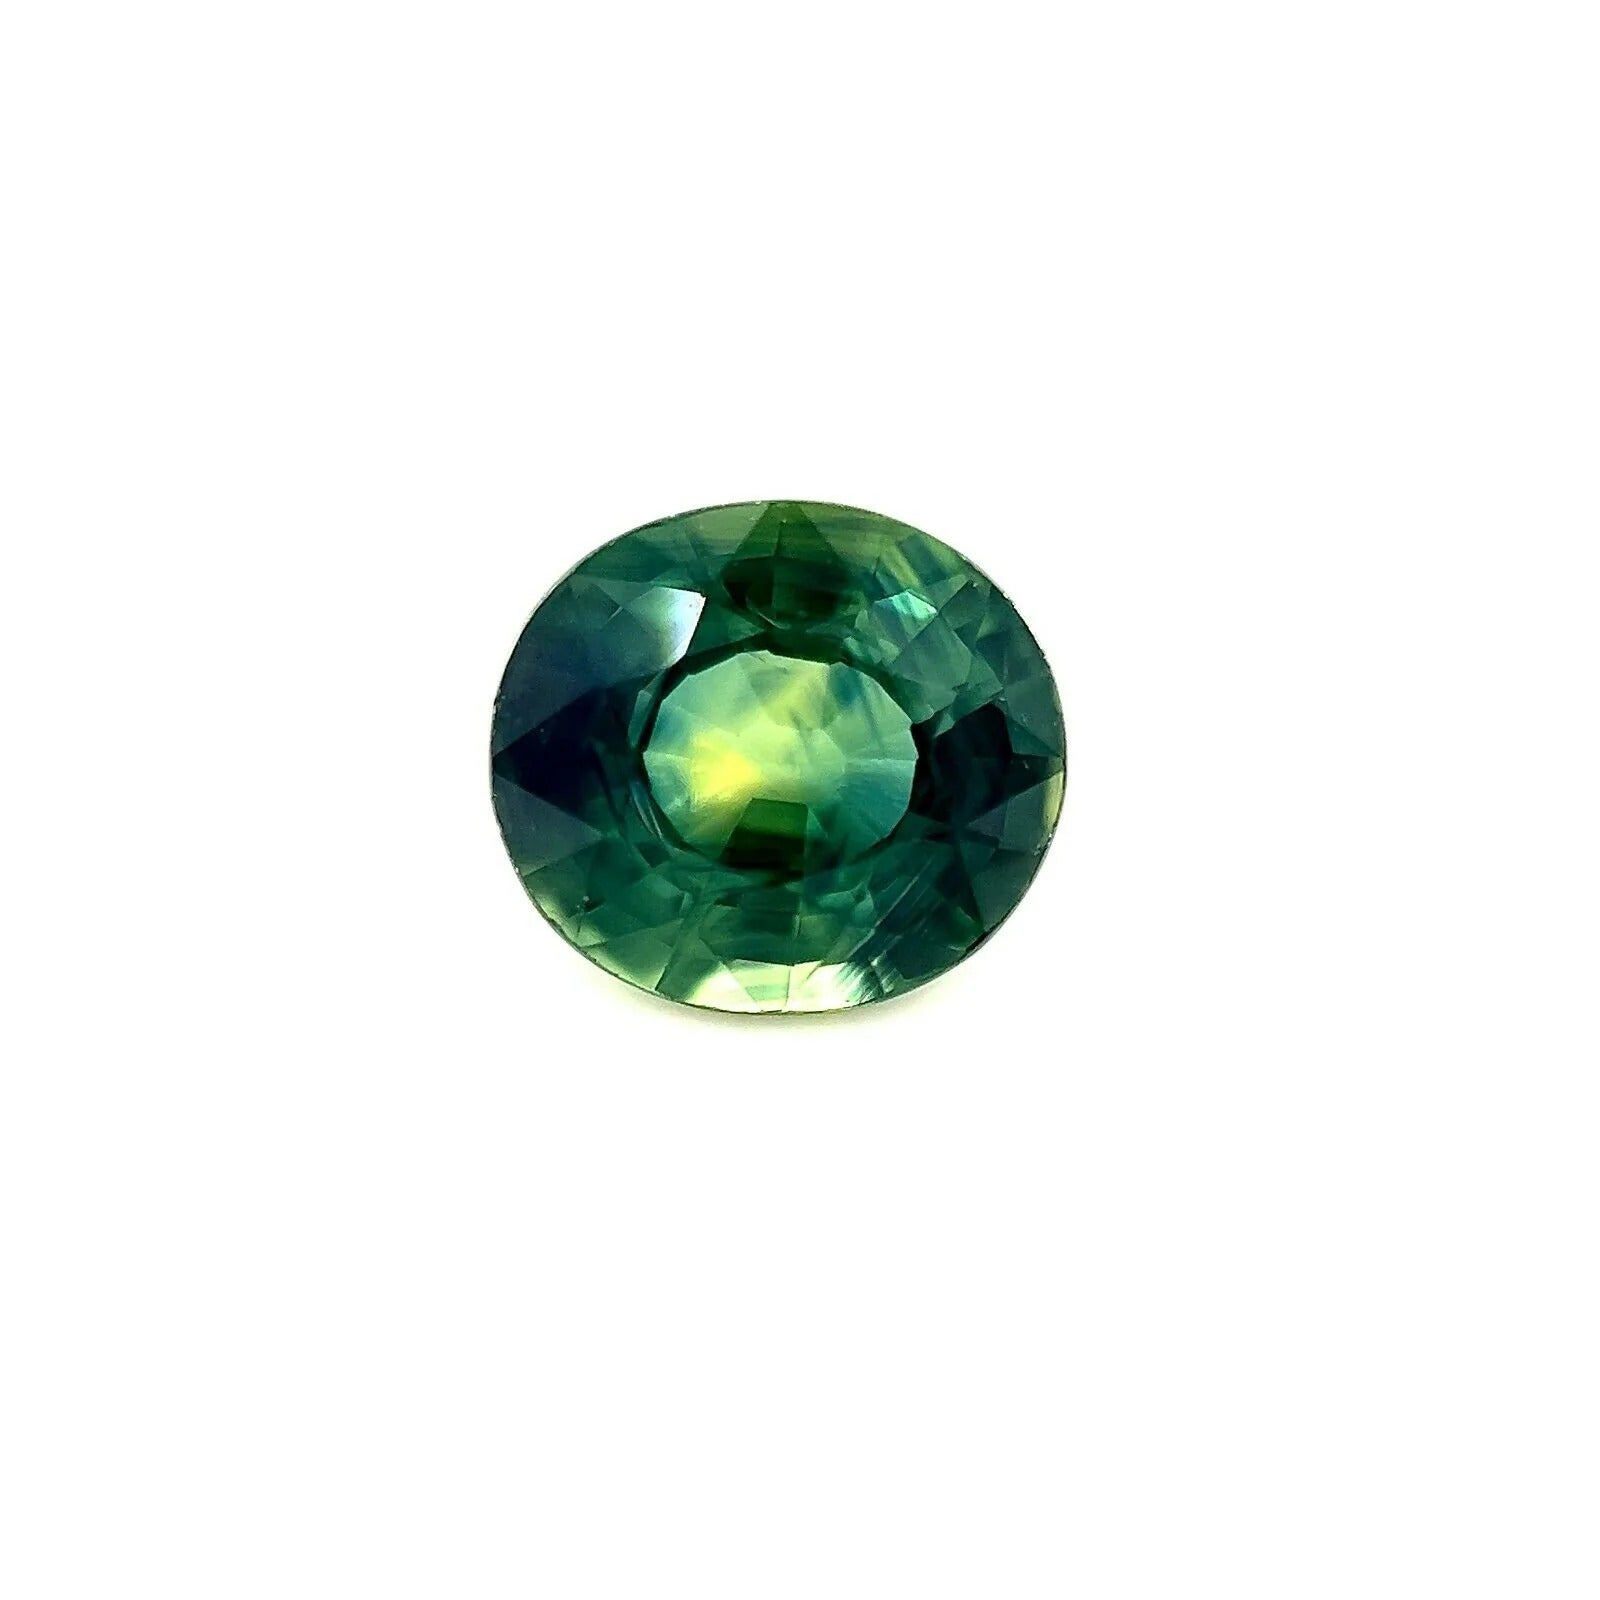 Saphir australien bleu vert sarcelle jaune taille ovale de 1,36 carat, pierre précieuse rare